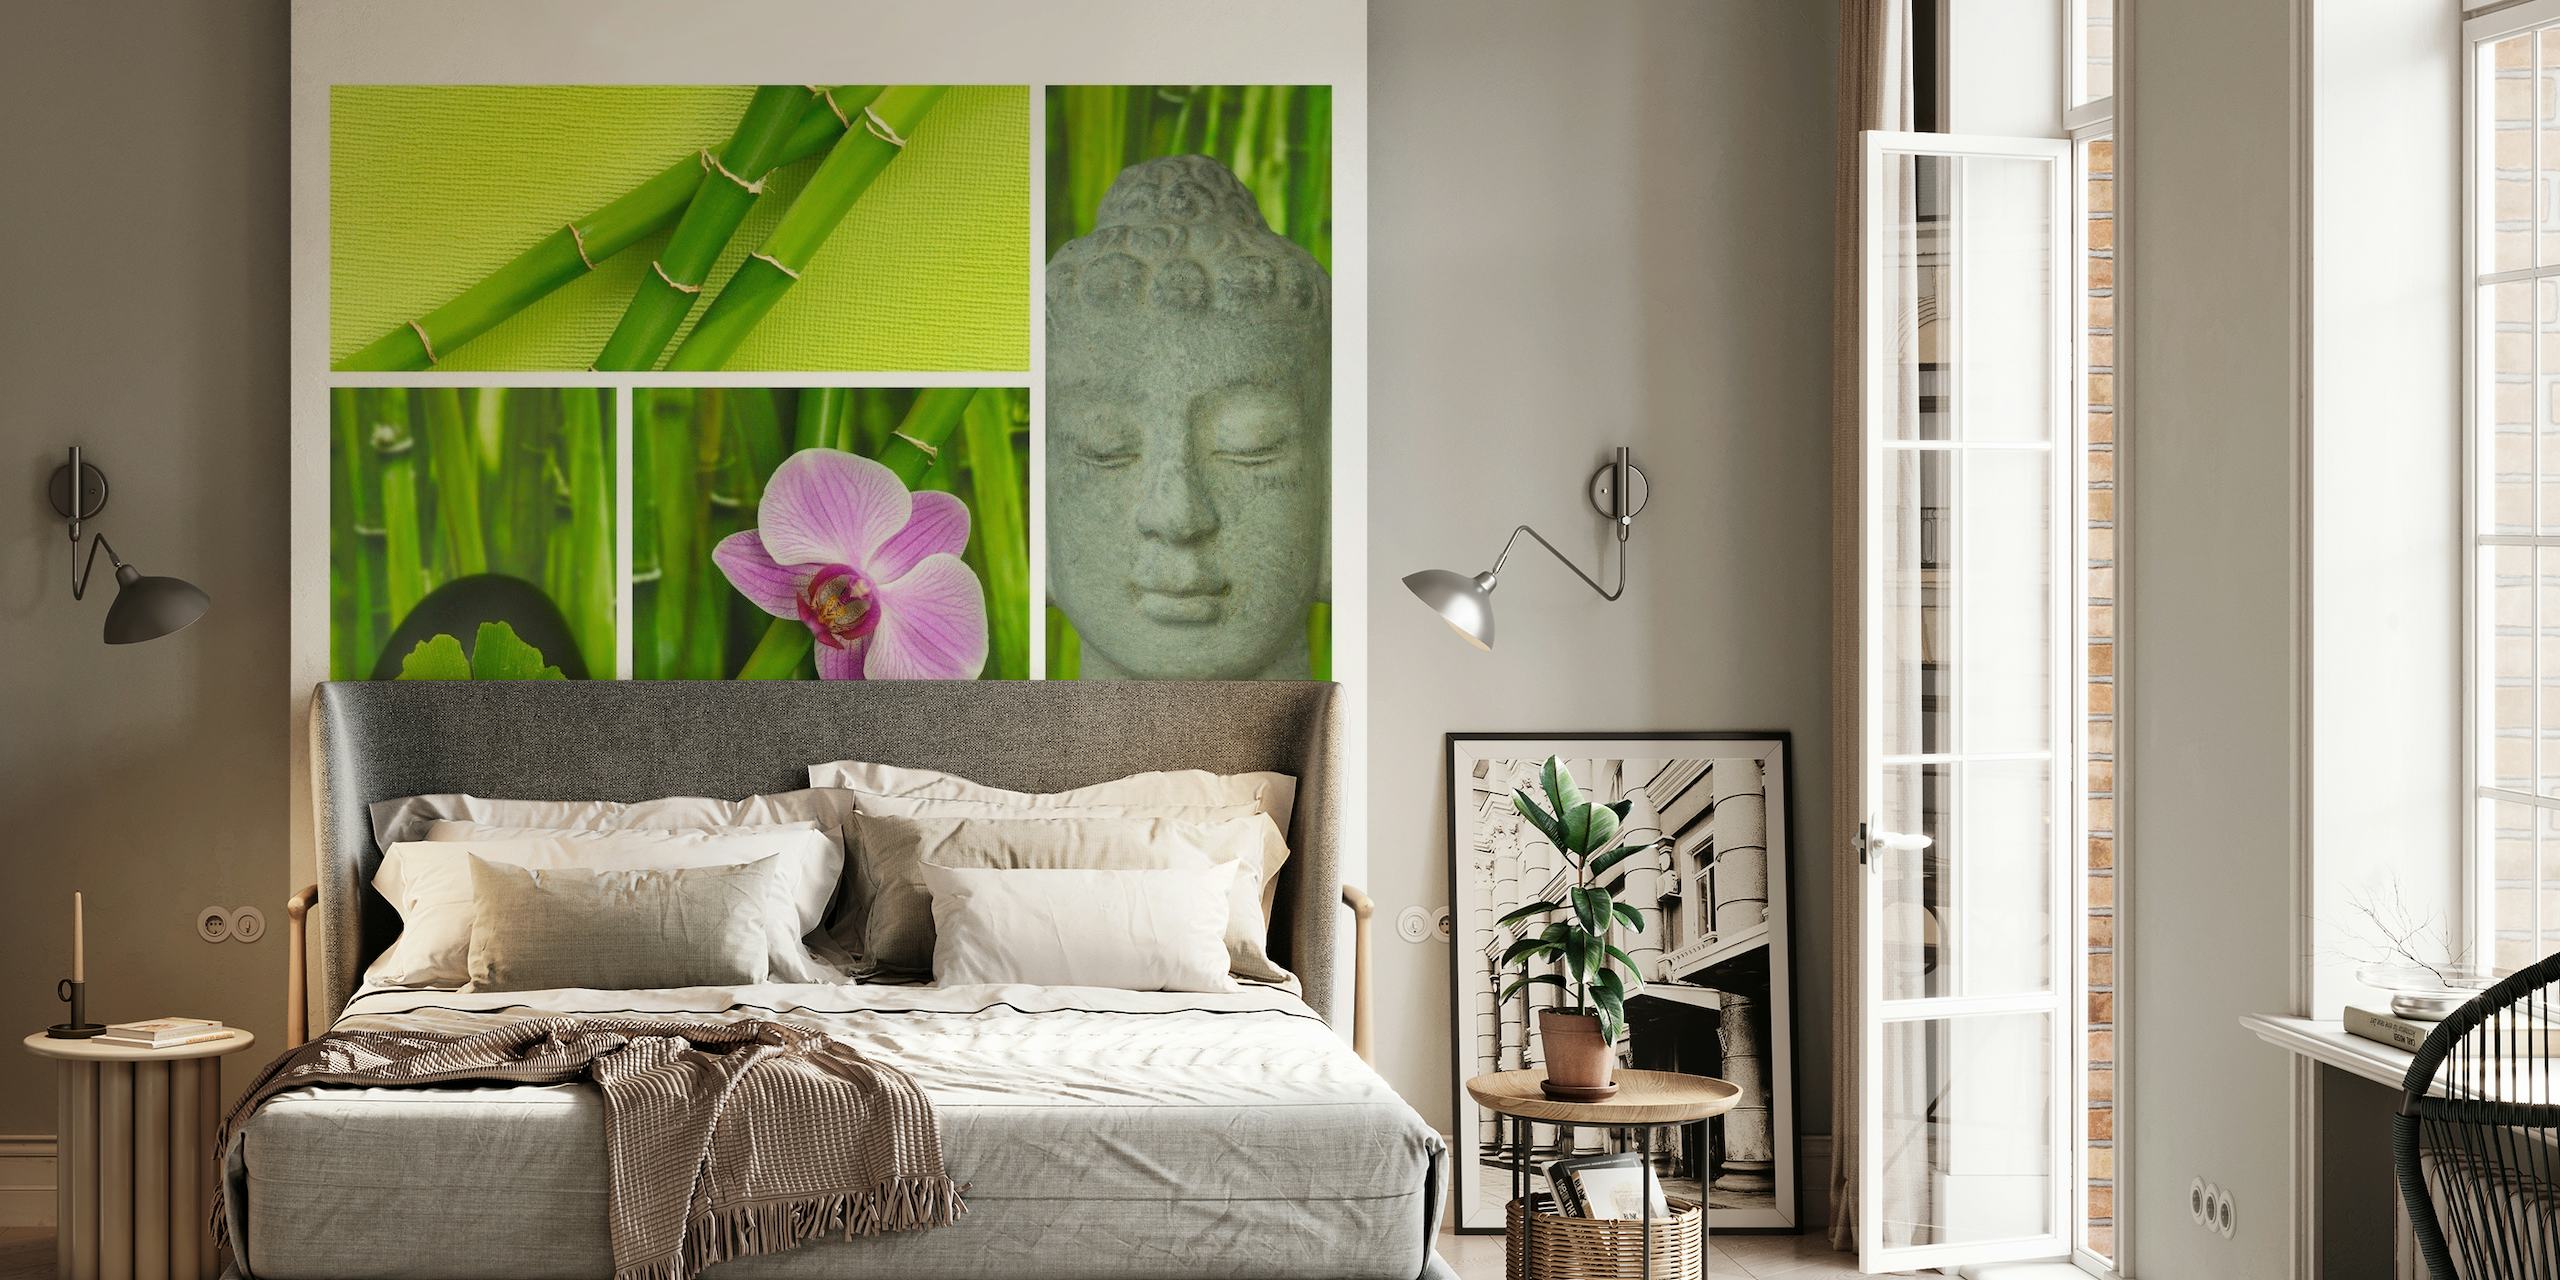 Relax Zen and Buddha seinämaalaus bambusta, orkideasta, Buddhan kasvoista ja "Relax" tekstistä